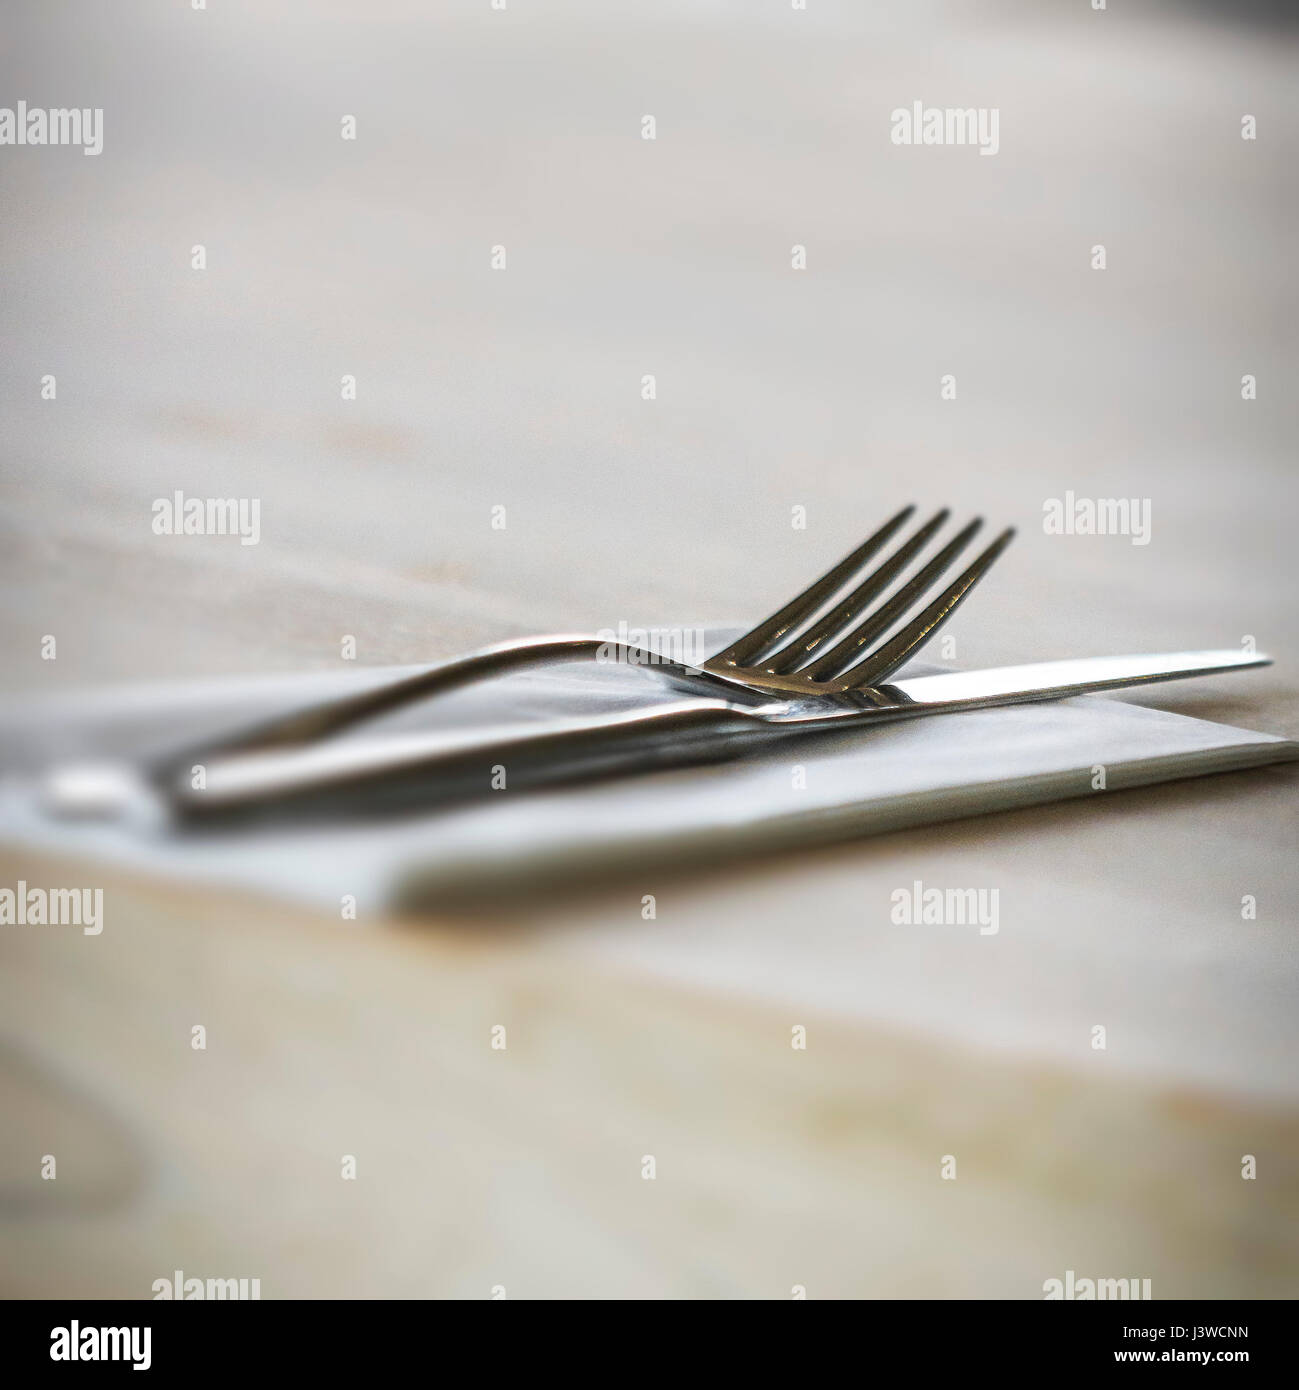 Un tenedor y un cuchillo con una servilleta Place Setting Restaurante utilizado Foto de stock